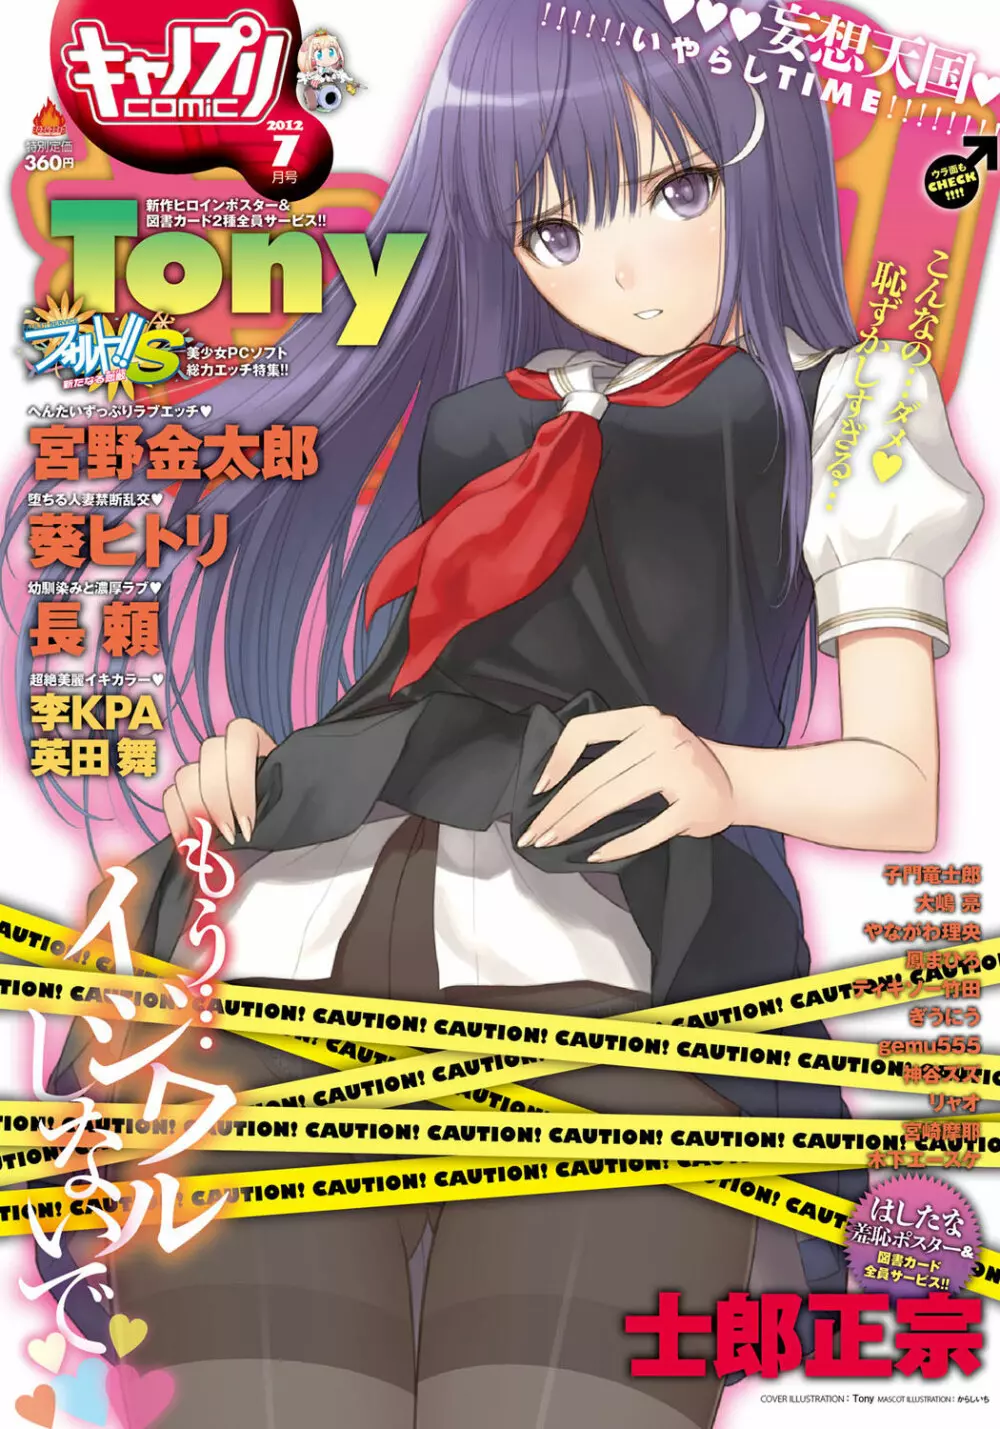 キャノプリ comic 2012年7月号 Vol.21